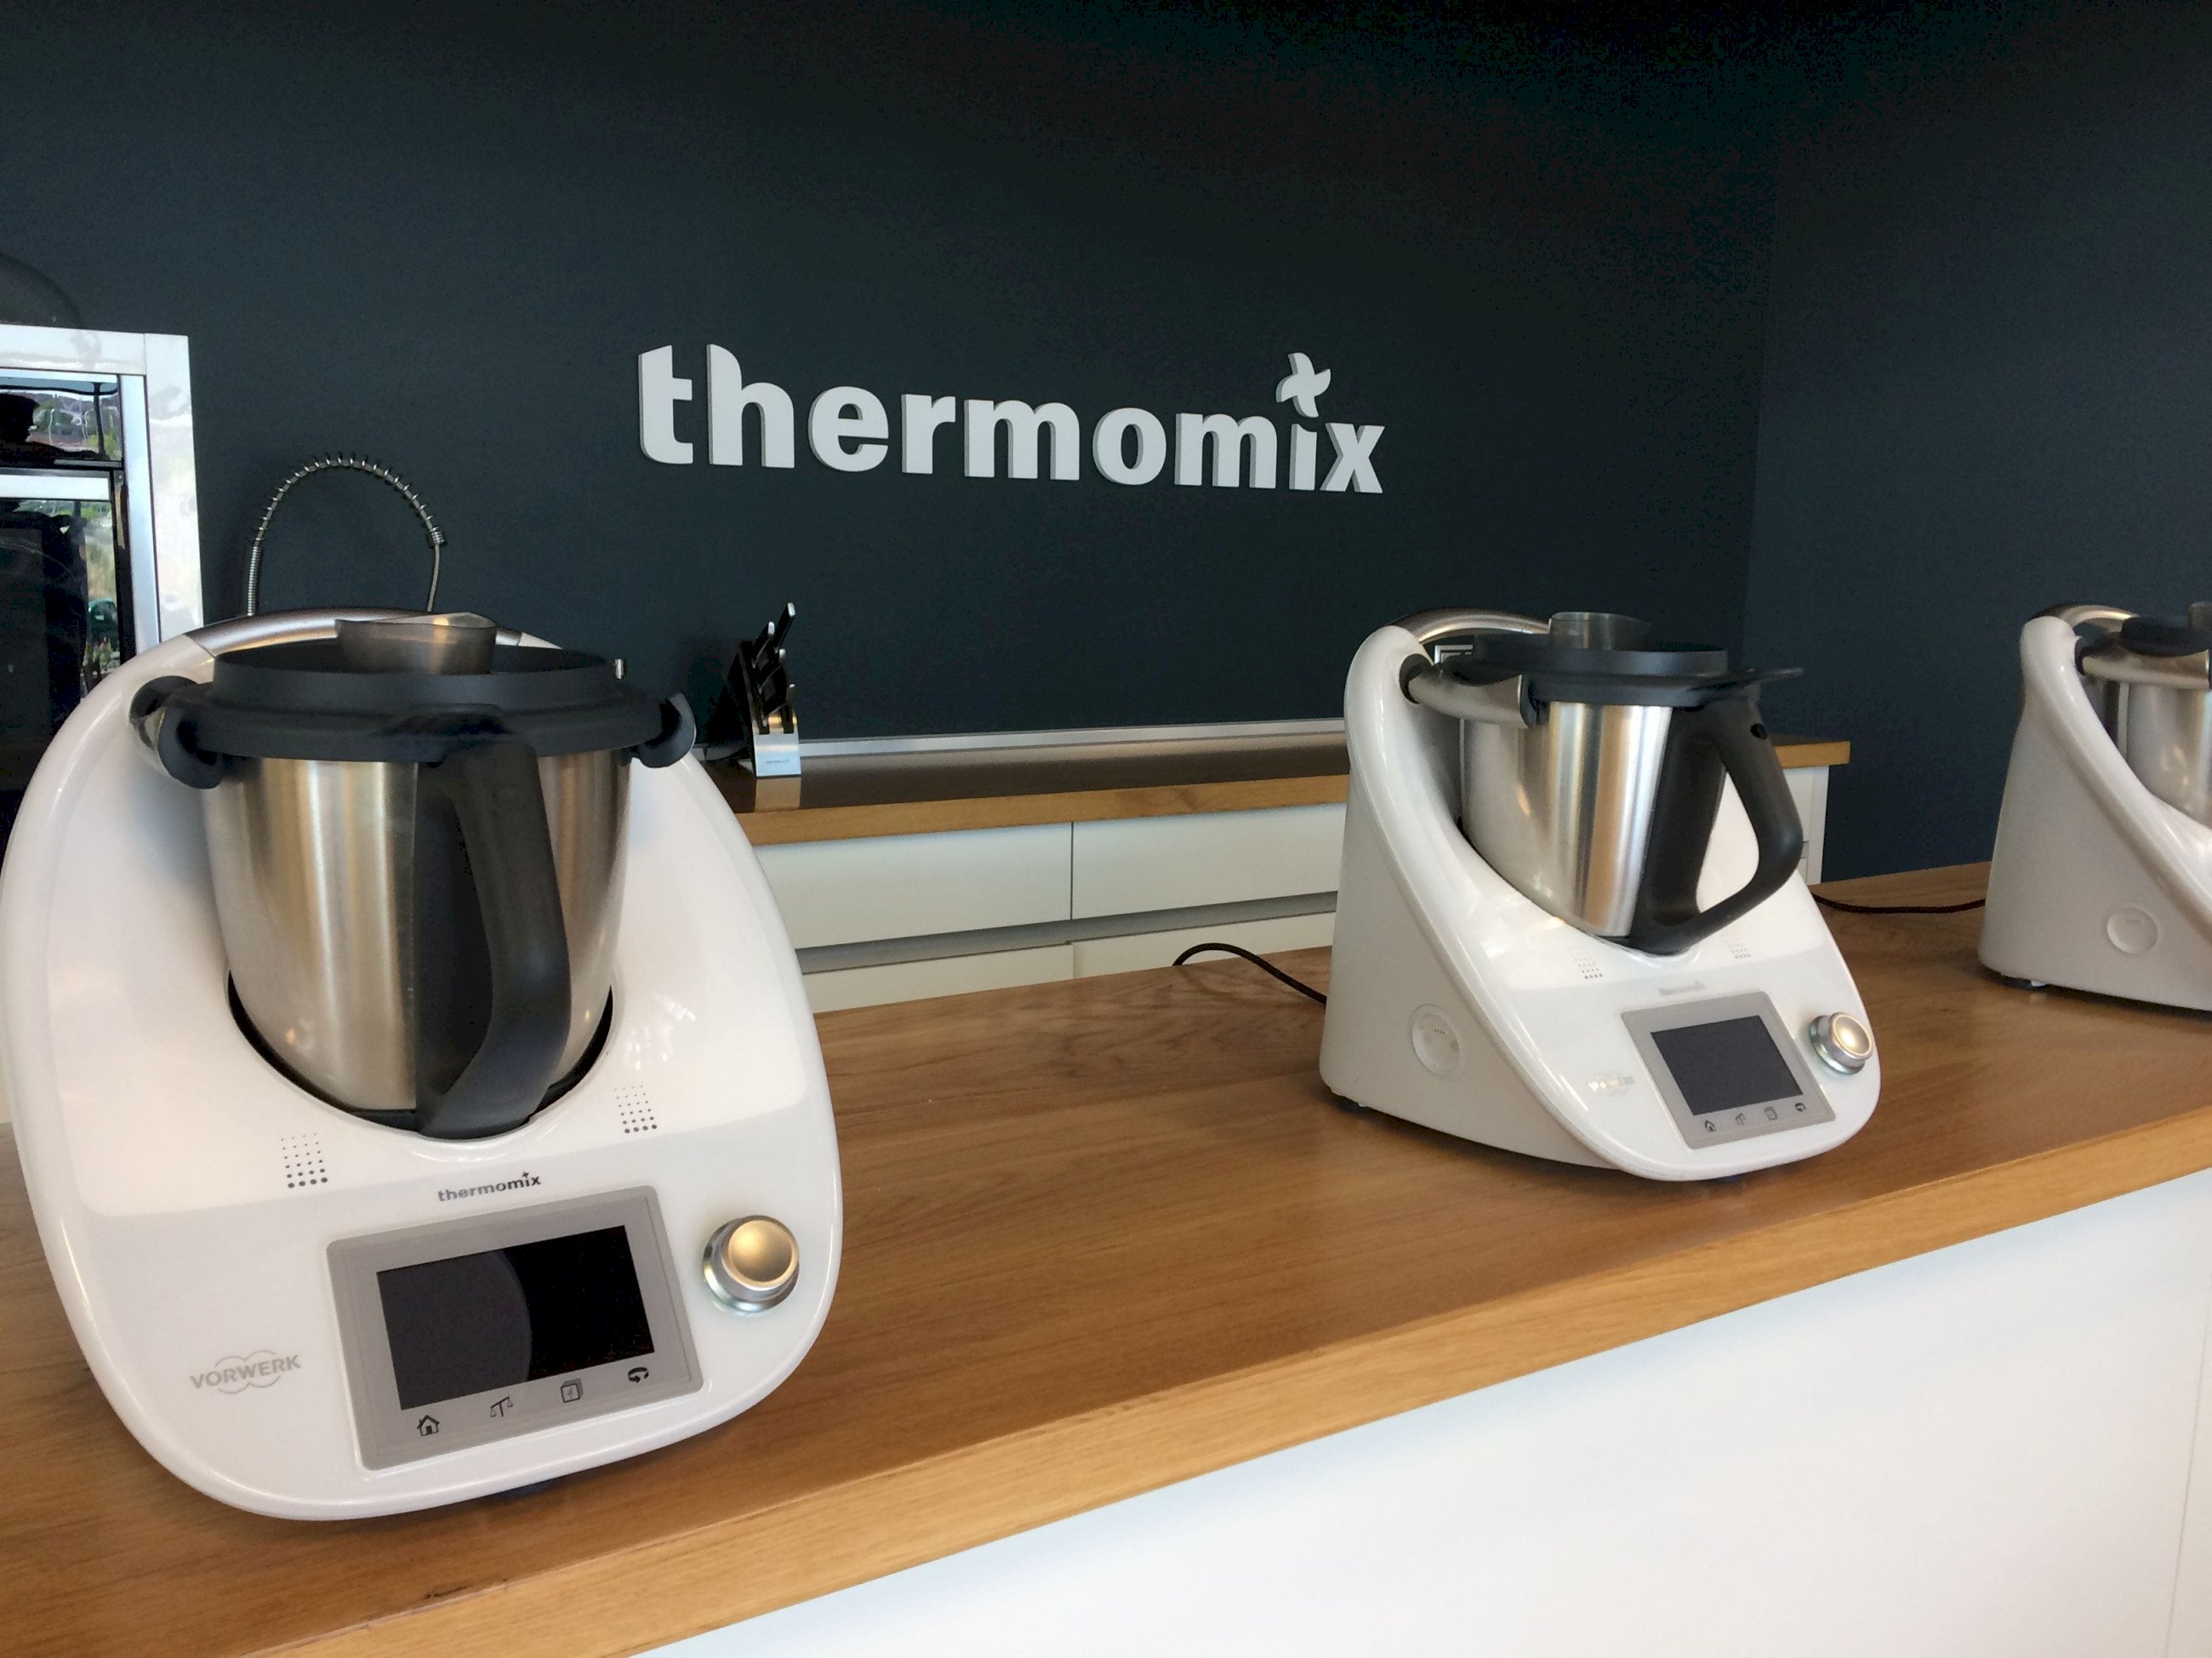 Nueva Thermomix TM5: pantalla táctil y recetas digitales